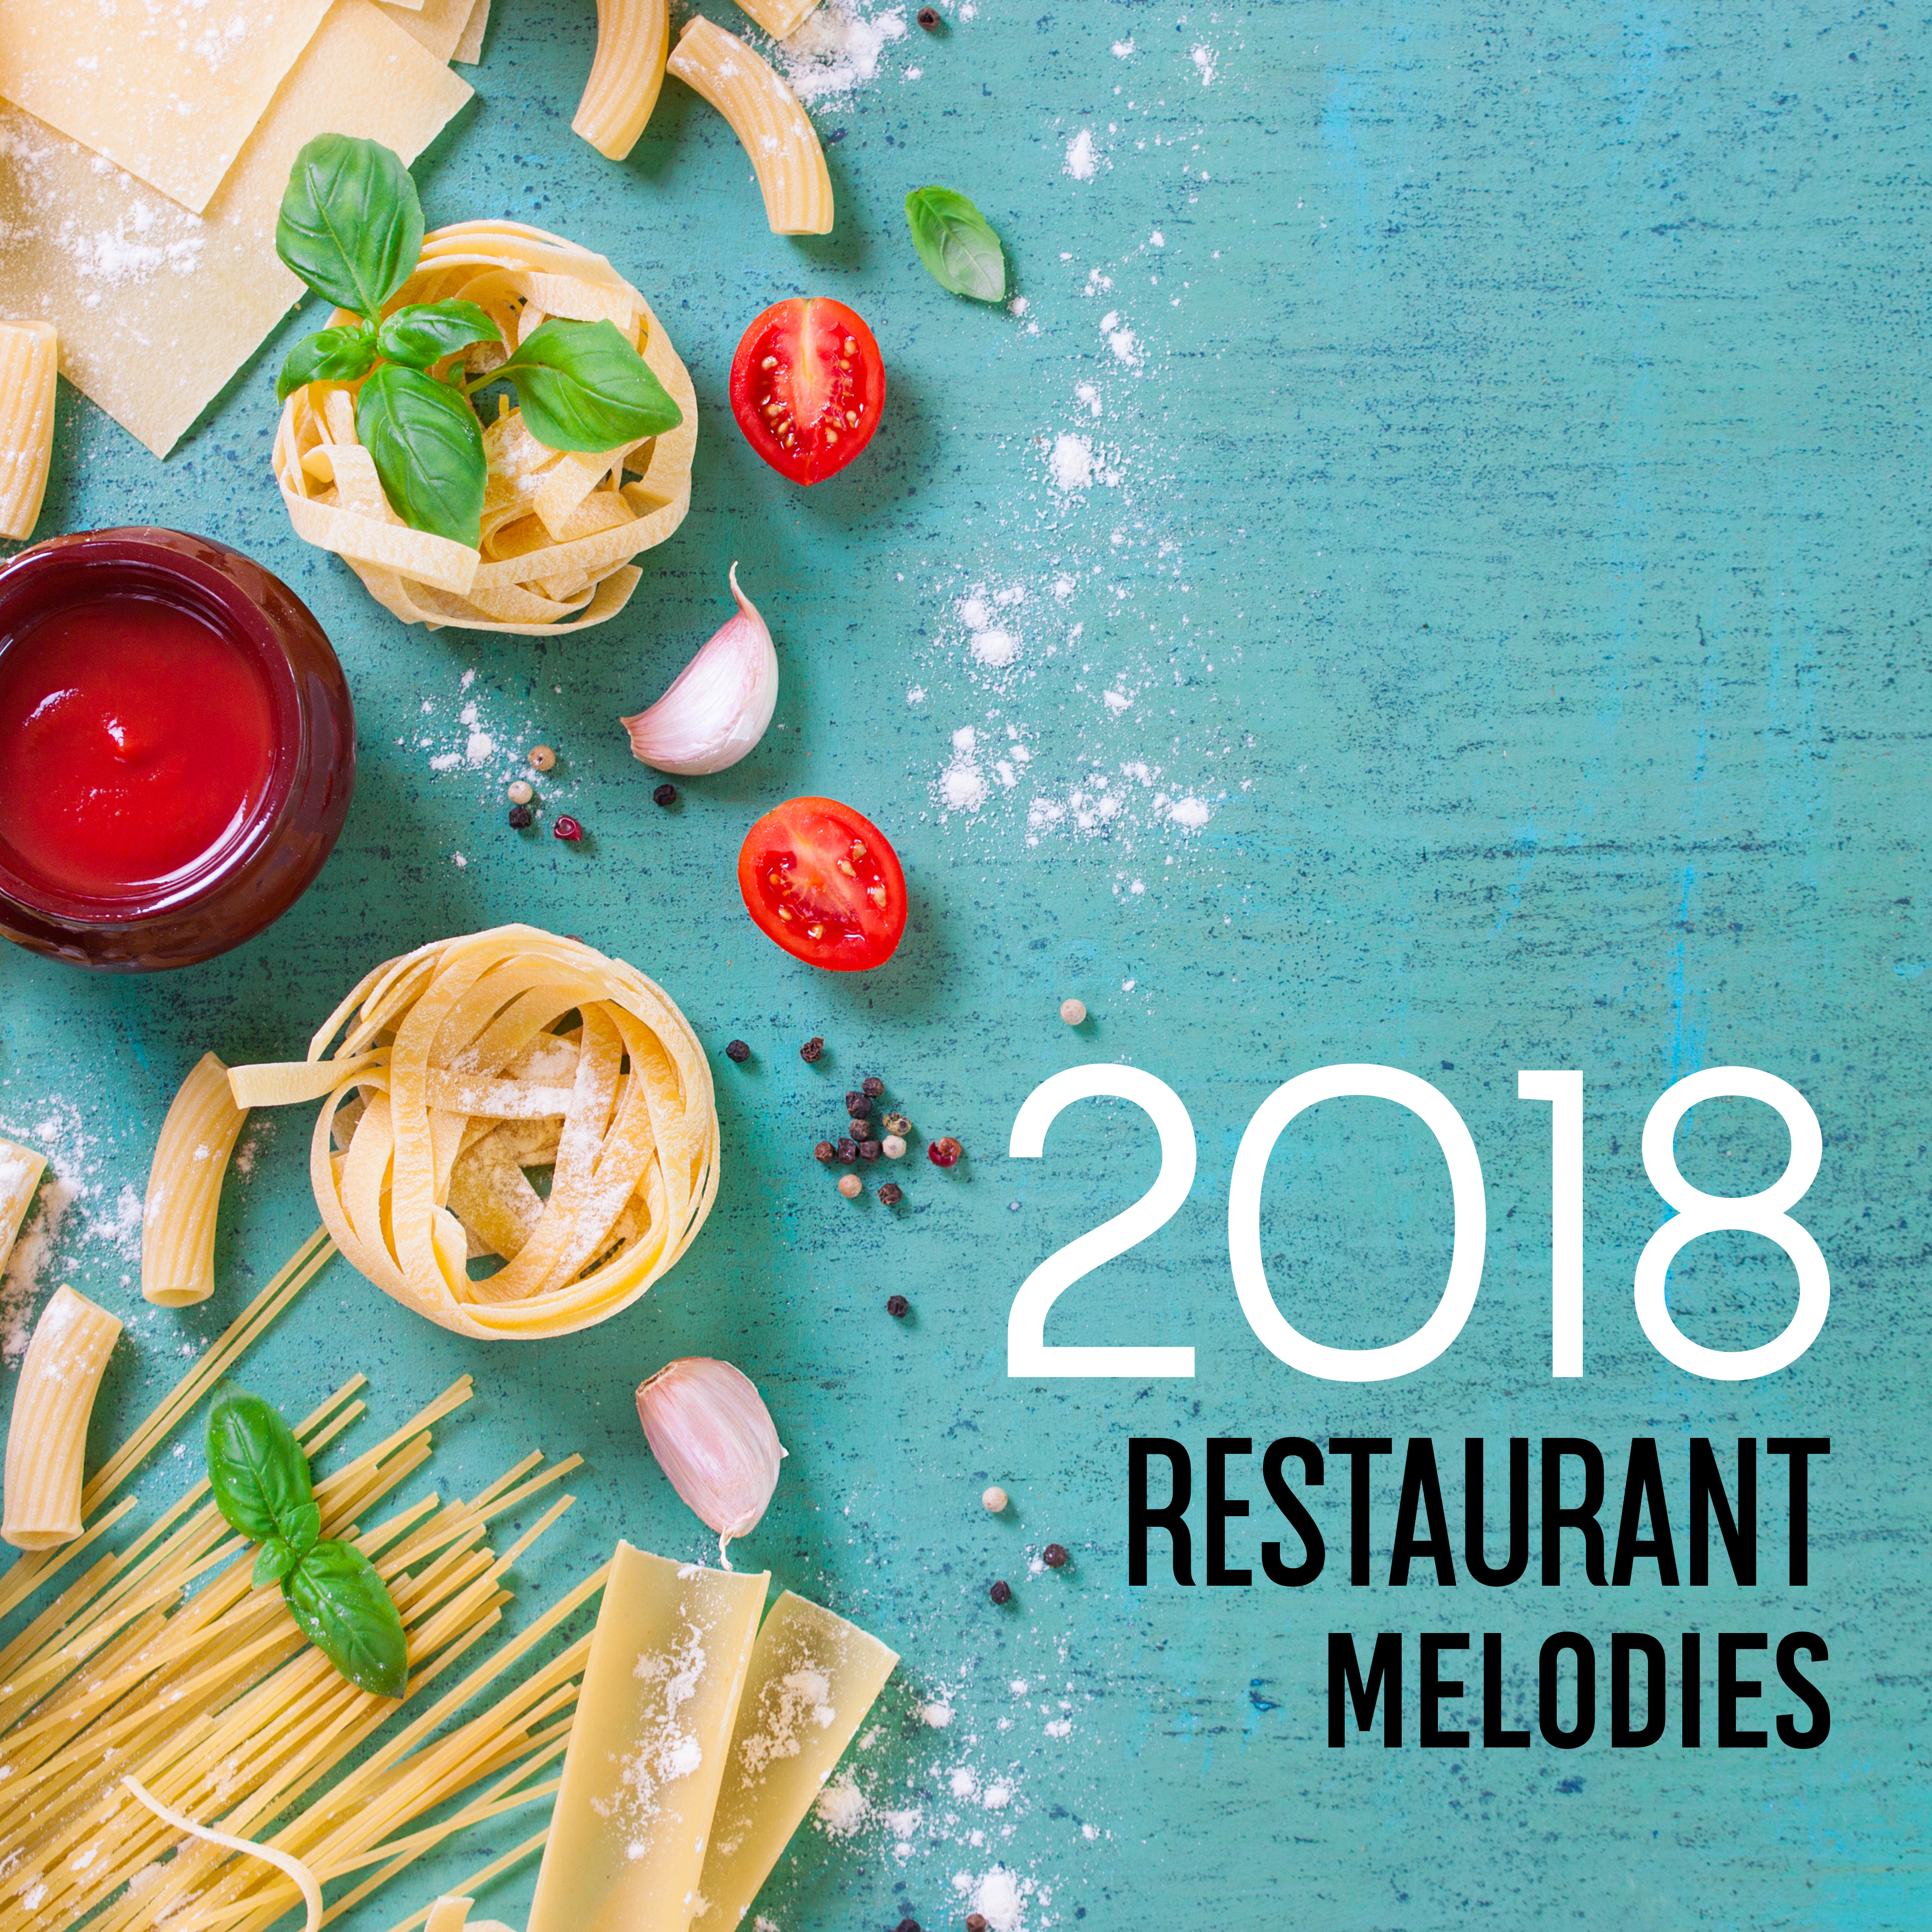 2018 Restaurant Melodies